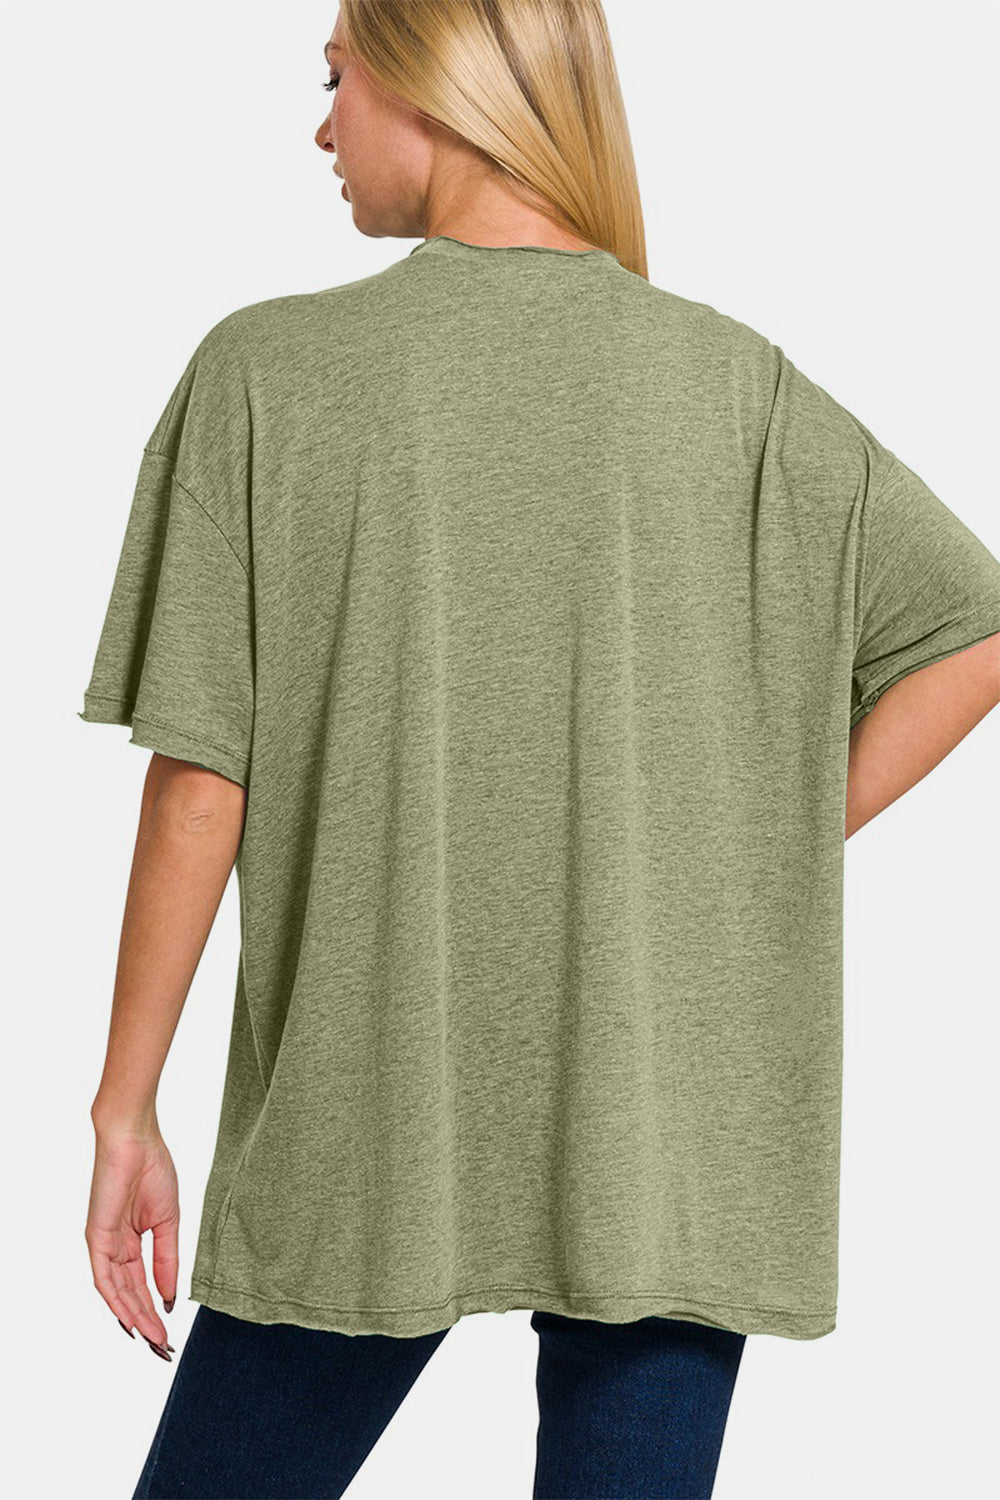 Zenana Olive Drop Shoulder Oversized Front Pocket T-Shirt Trendsi